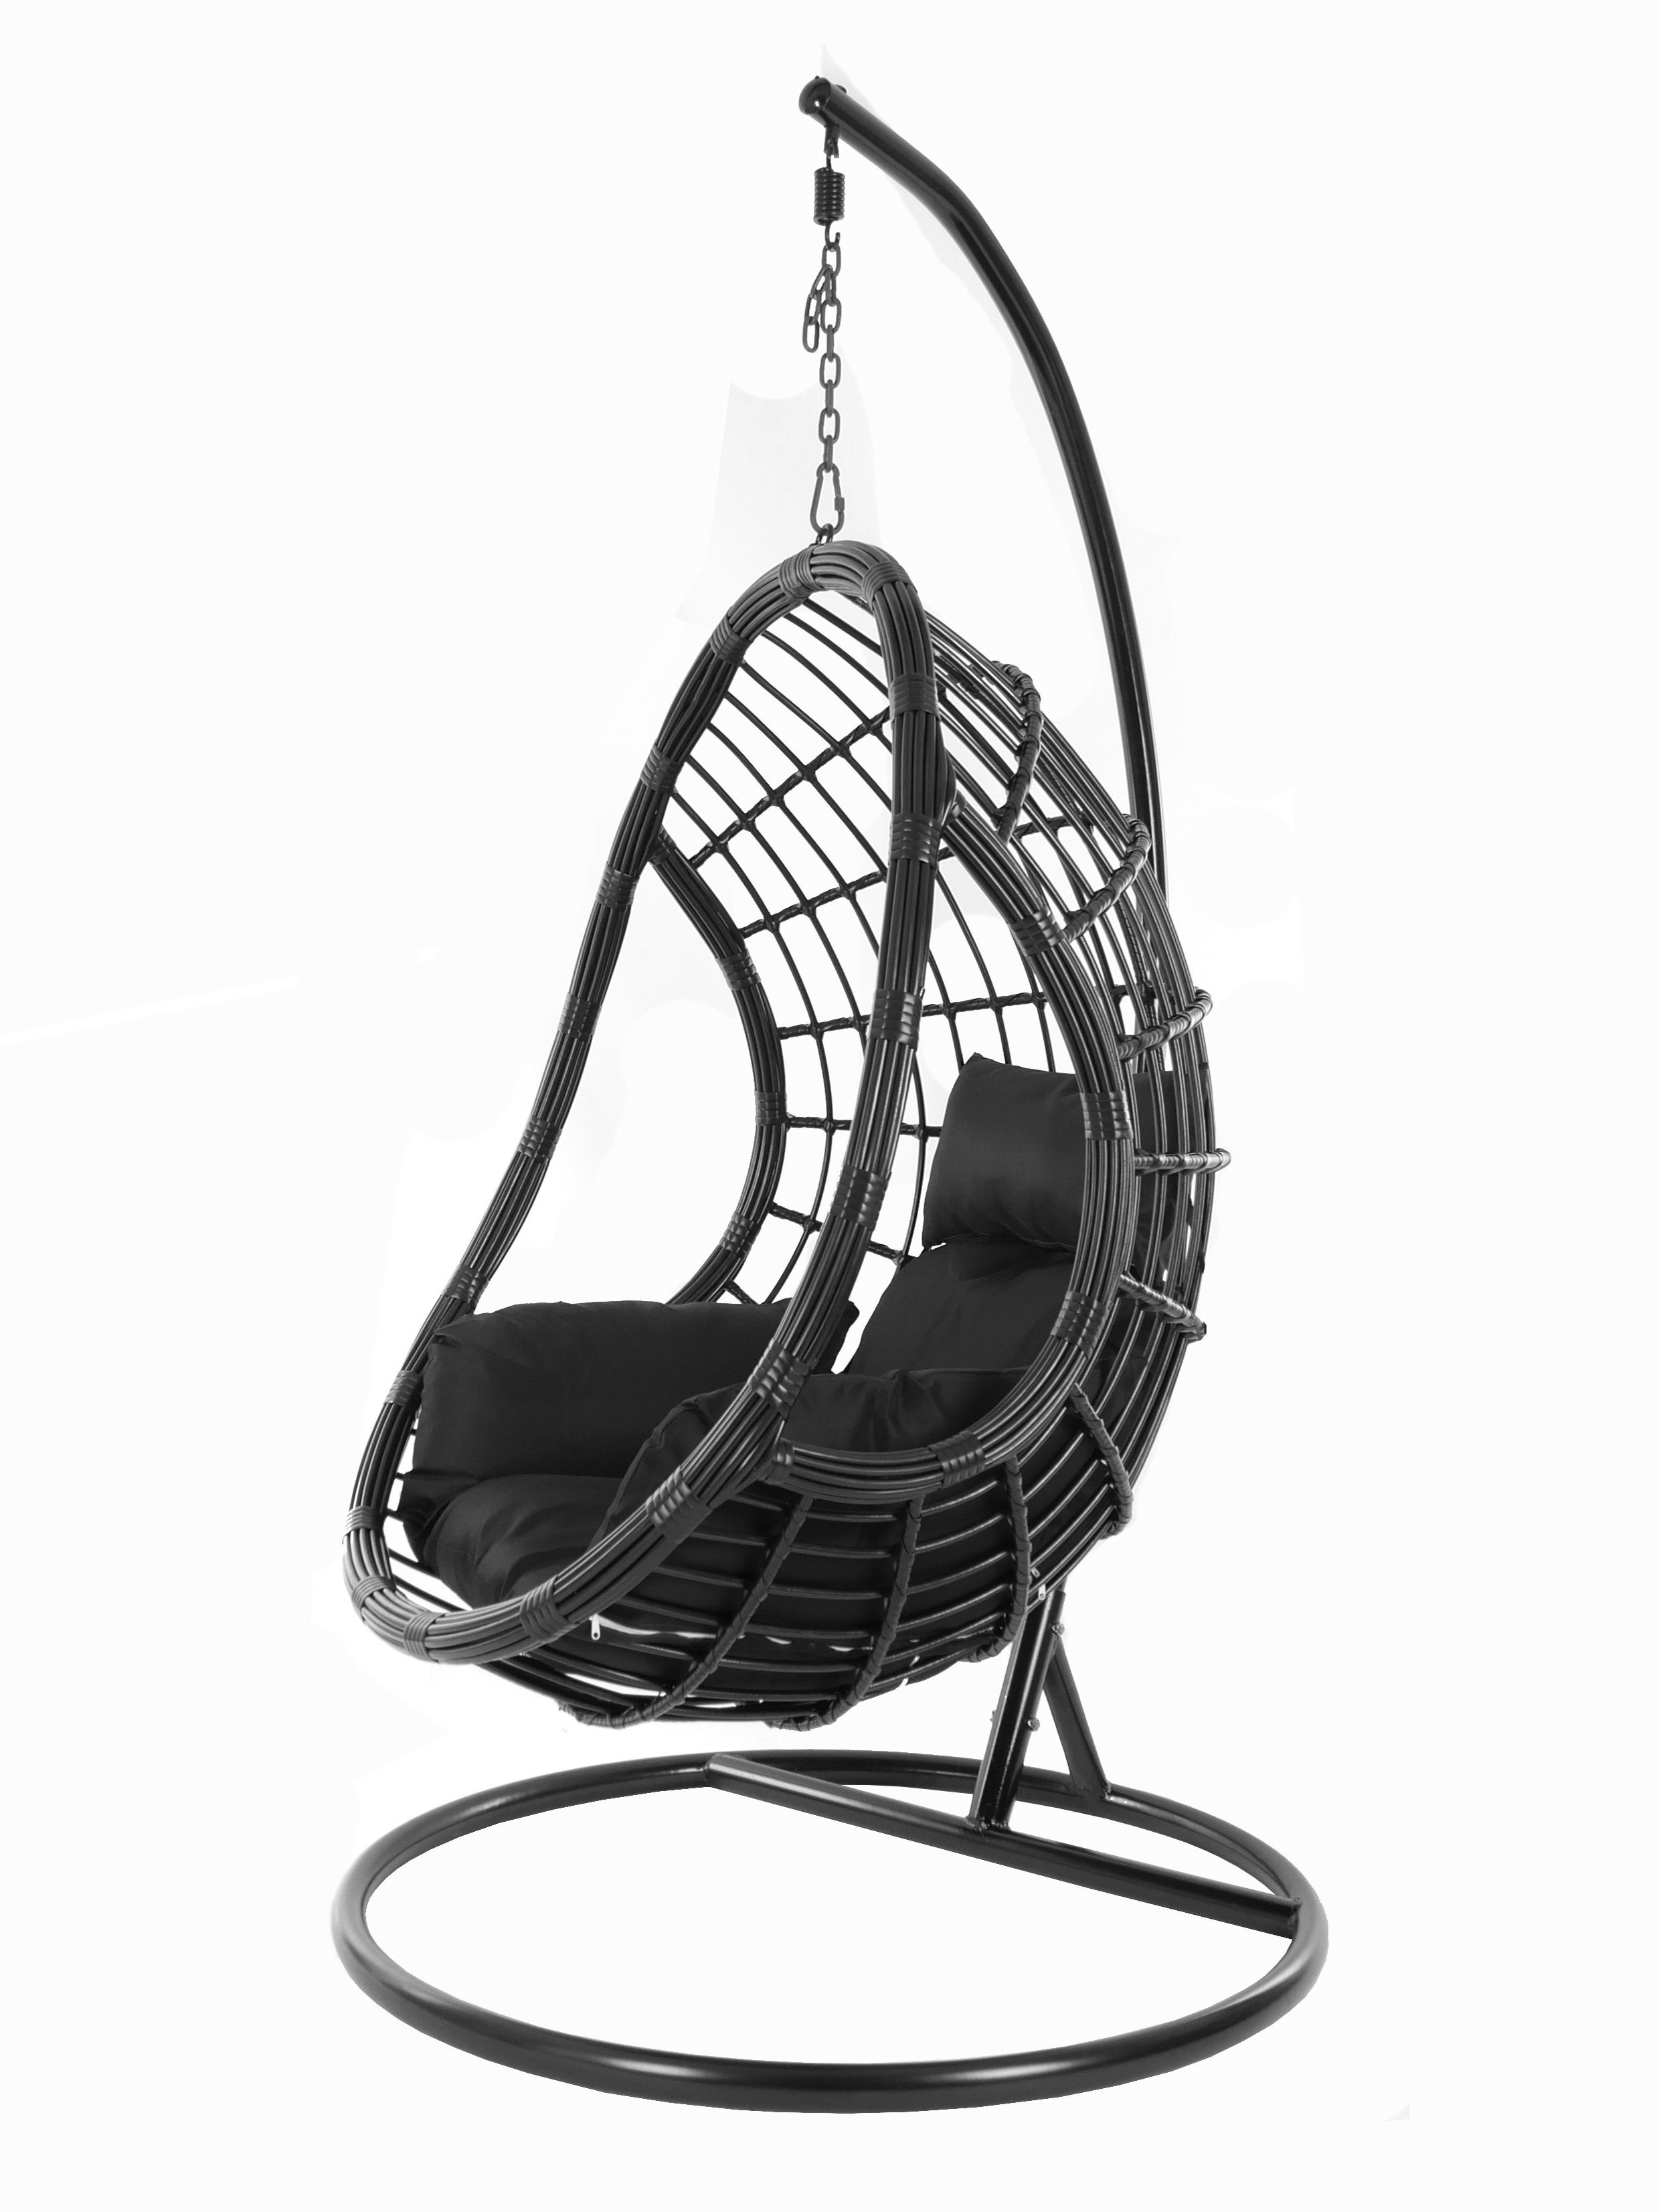 KIDEO Hängesessel PALMANOVA black, Schwebesessel, Swing Chair, Hängesessel mit Gestell und Kissen, Nest-Kissen schwarz (9999 black)